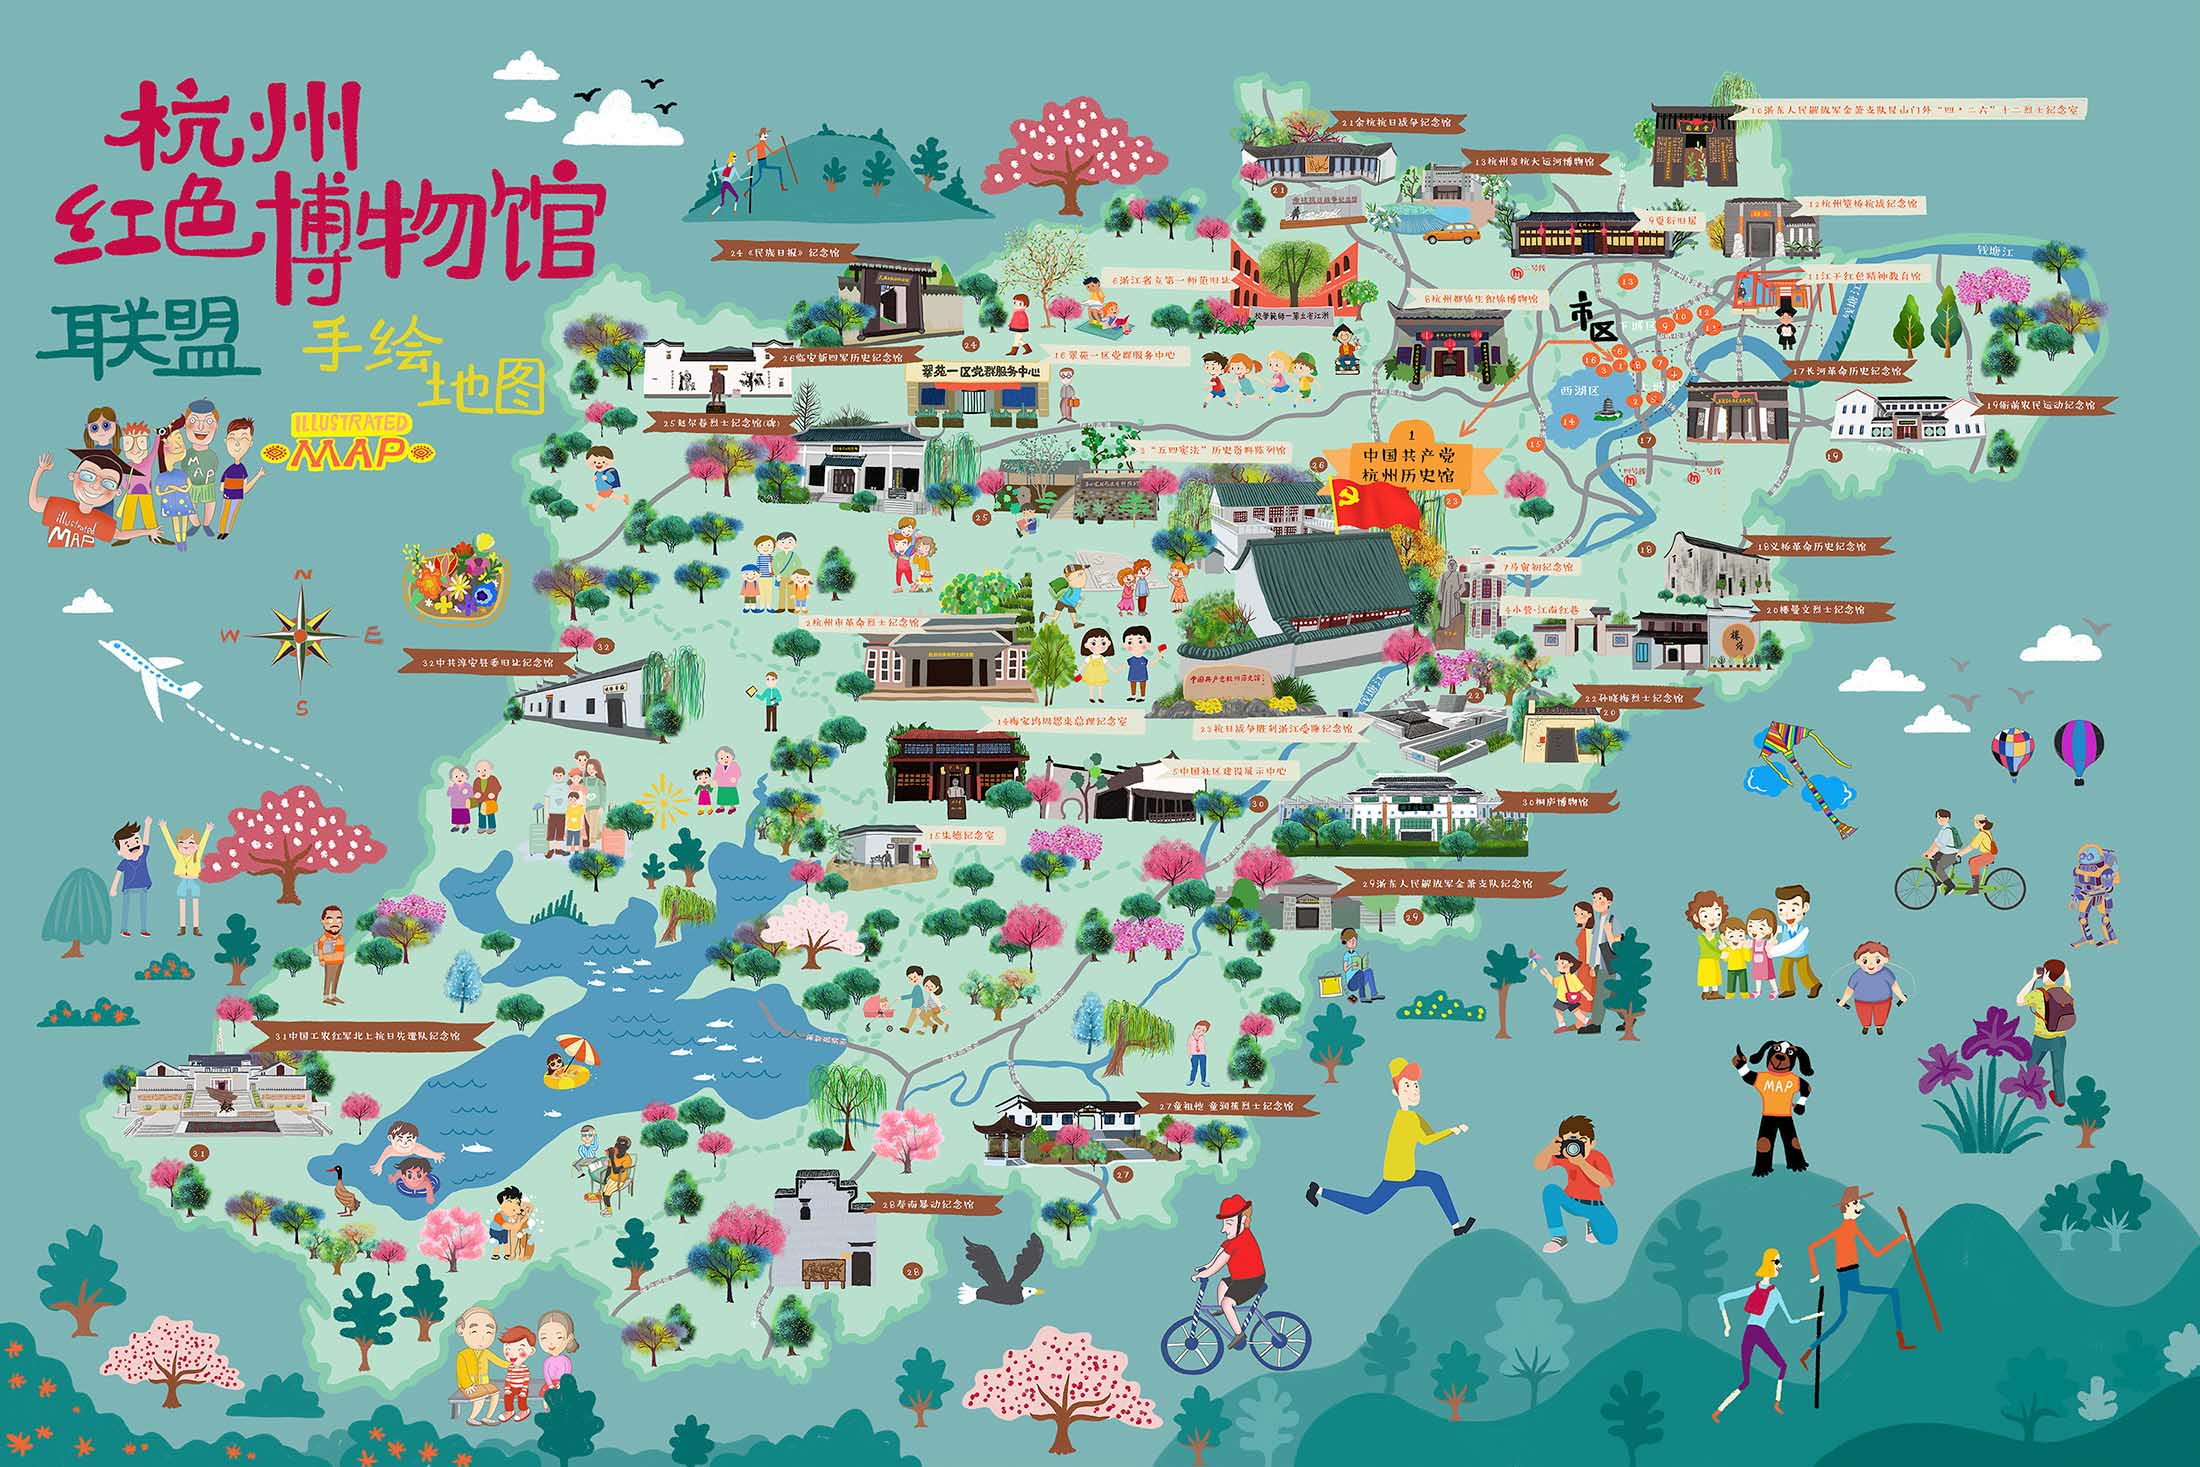 社旗县手绘地图与科技的完美结合 